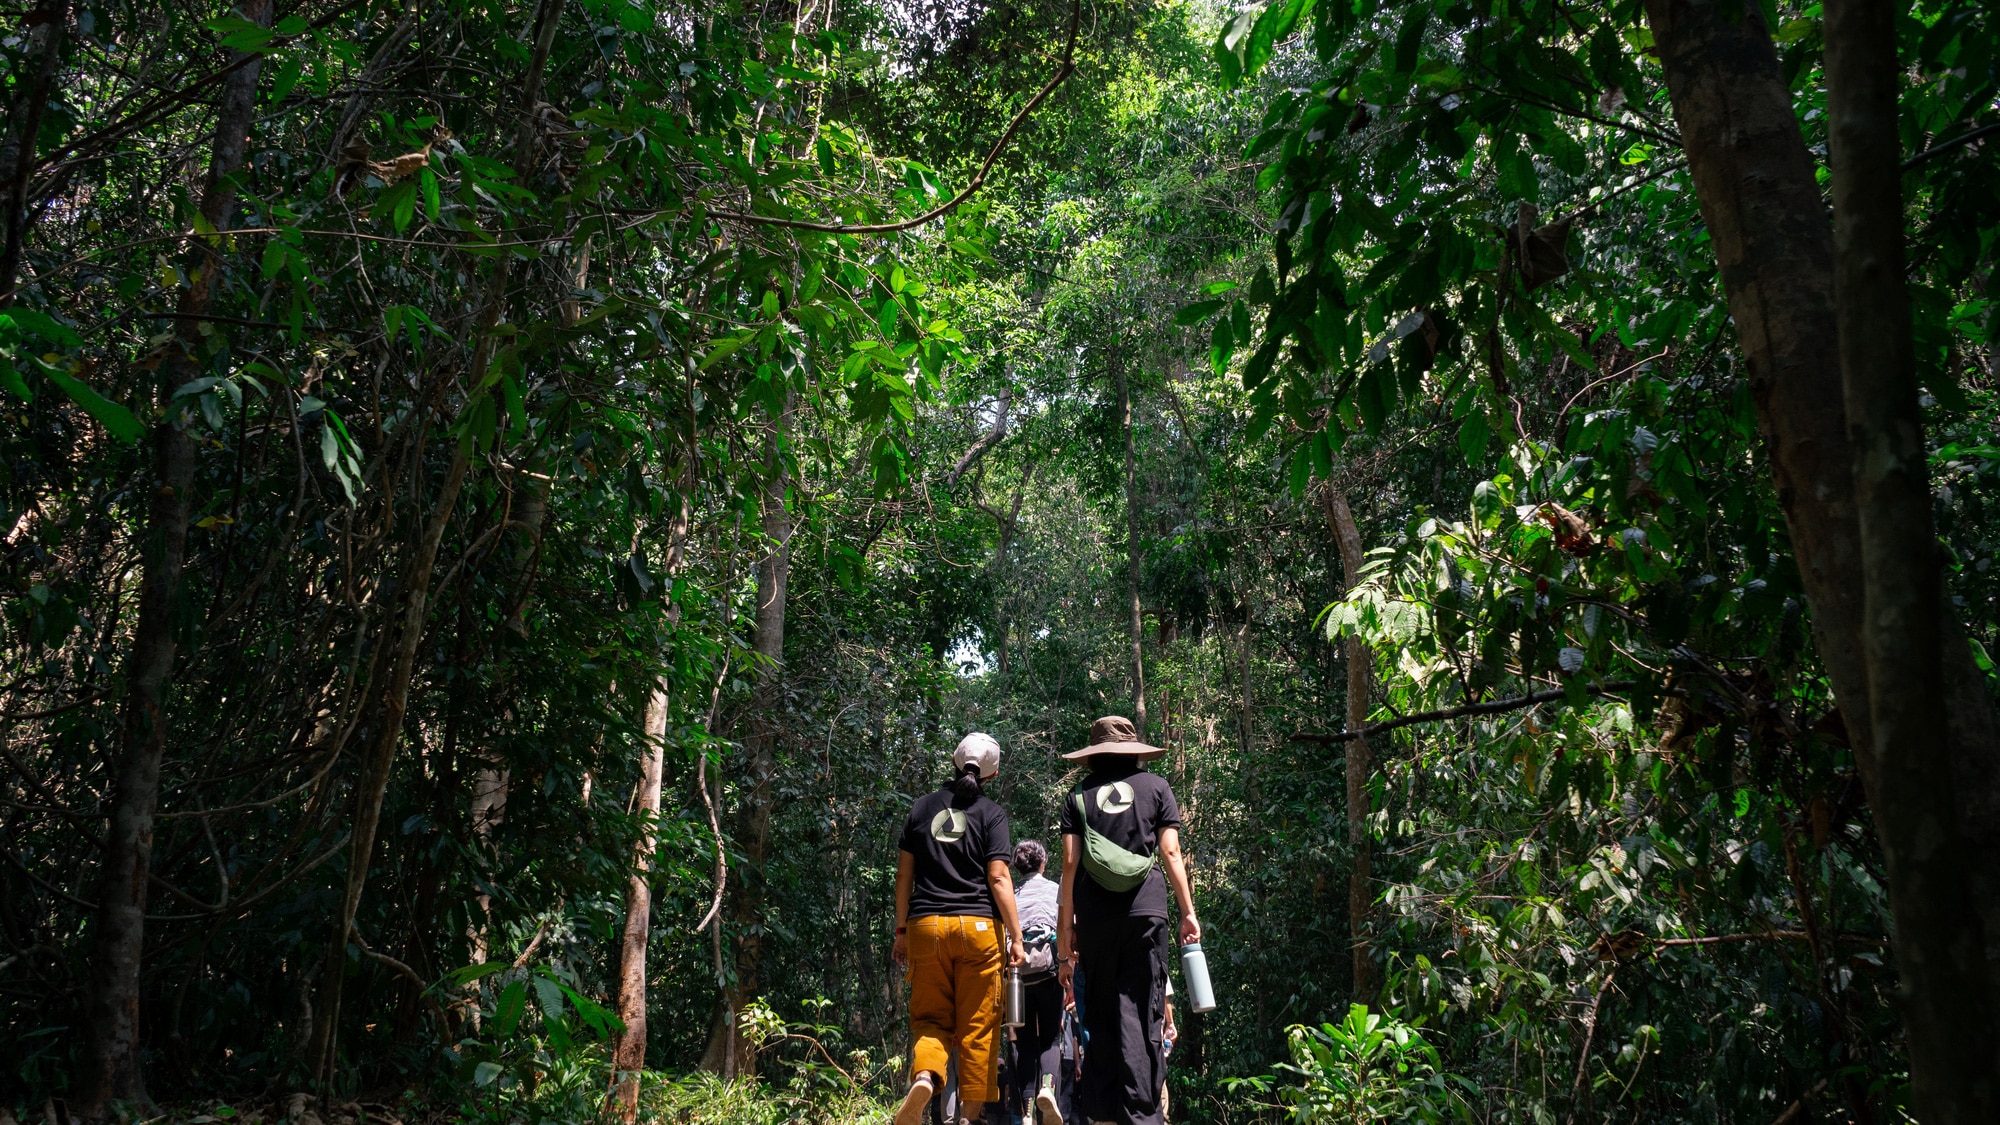 Rừng nhiệt đới Mã Đà có hệ sinh thái và cảnh quan phong phú bậc nhất Việt Nam, được Tổ chức UNESCO công nhận là khu dự trữ sinh quyển thứ 580 của thế giới vào năm 2011 - Ảnh: MINH ĐĂNG